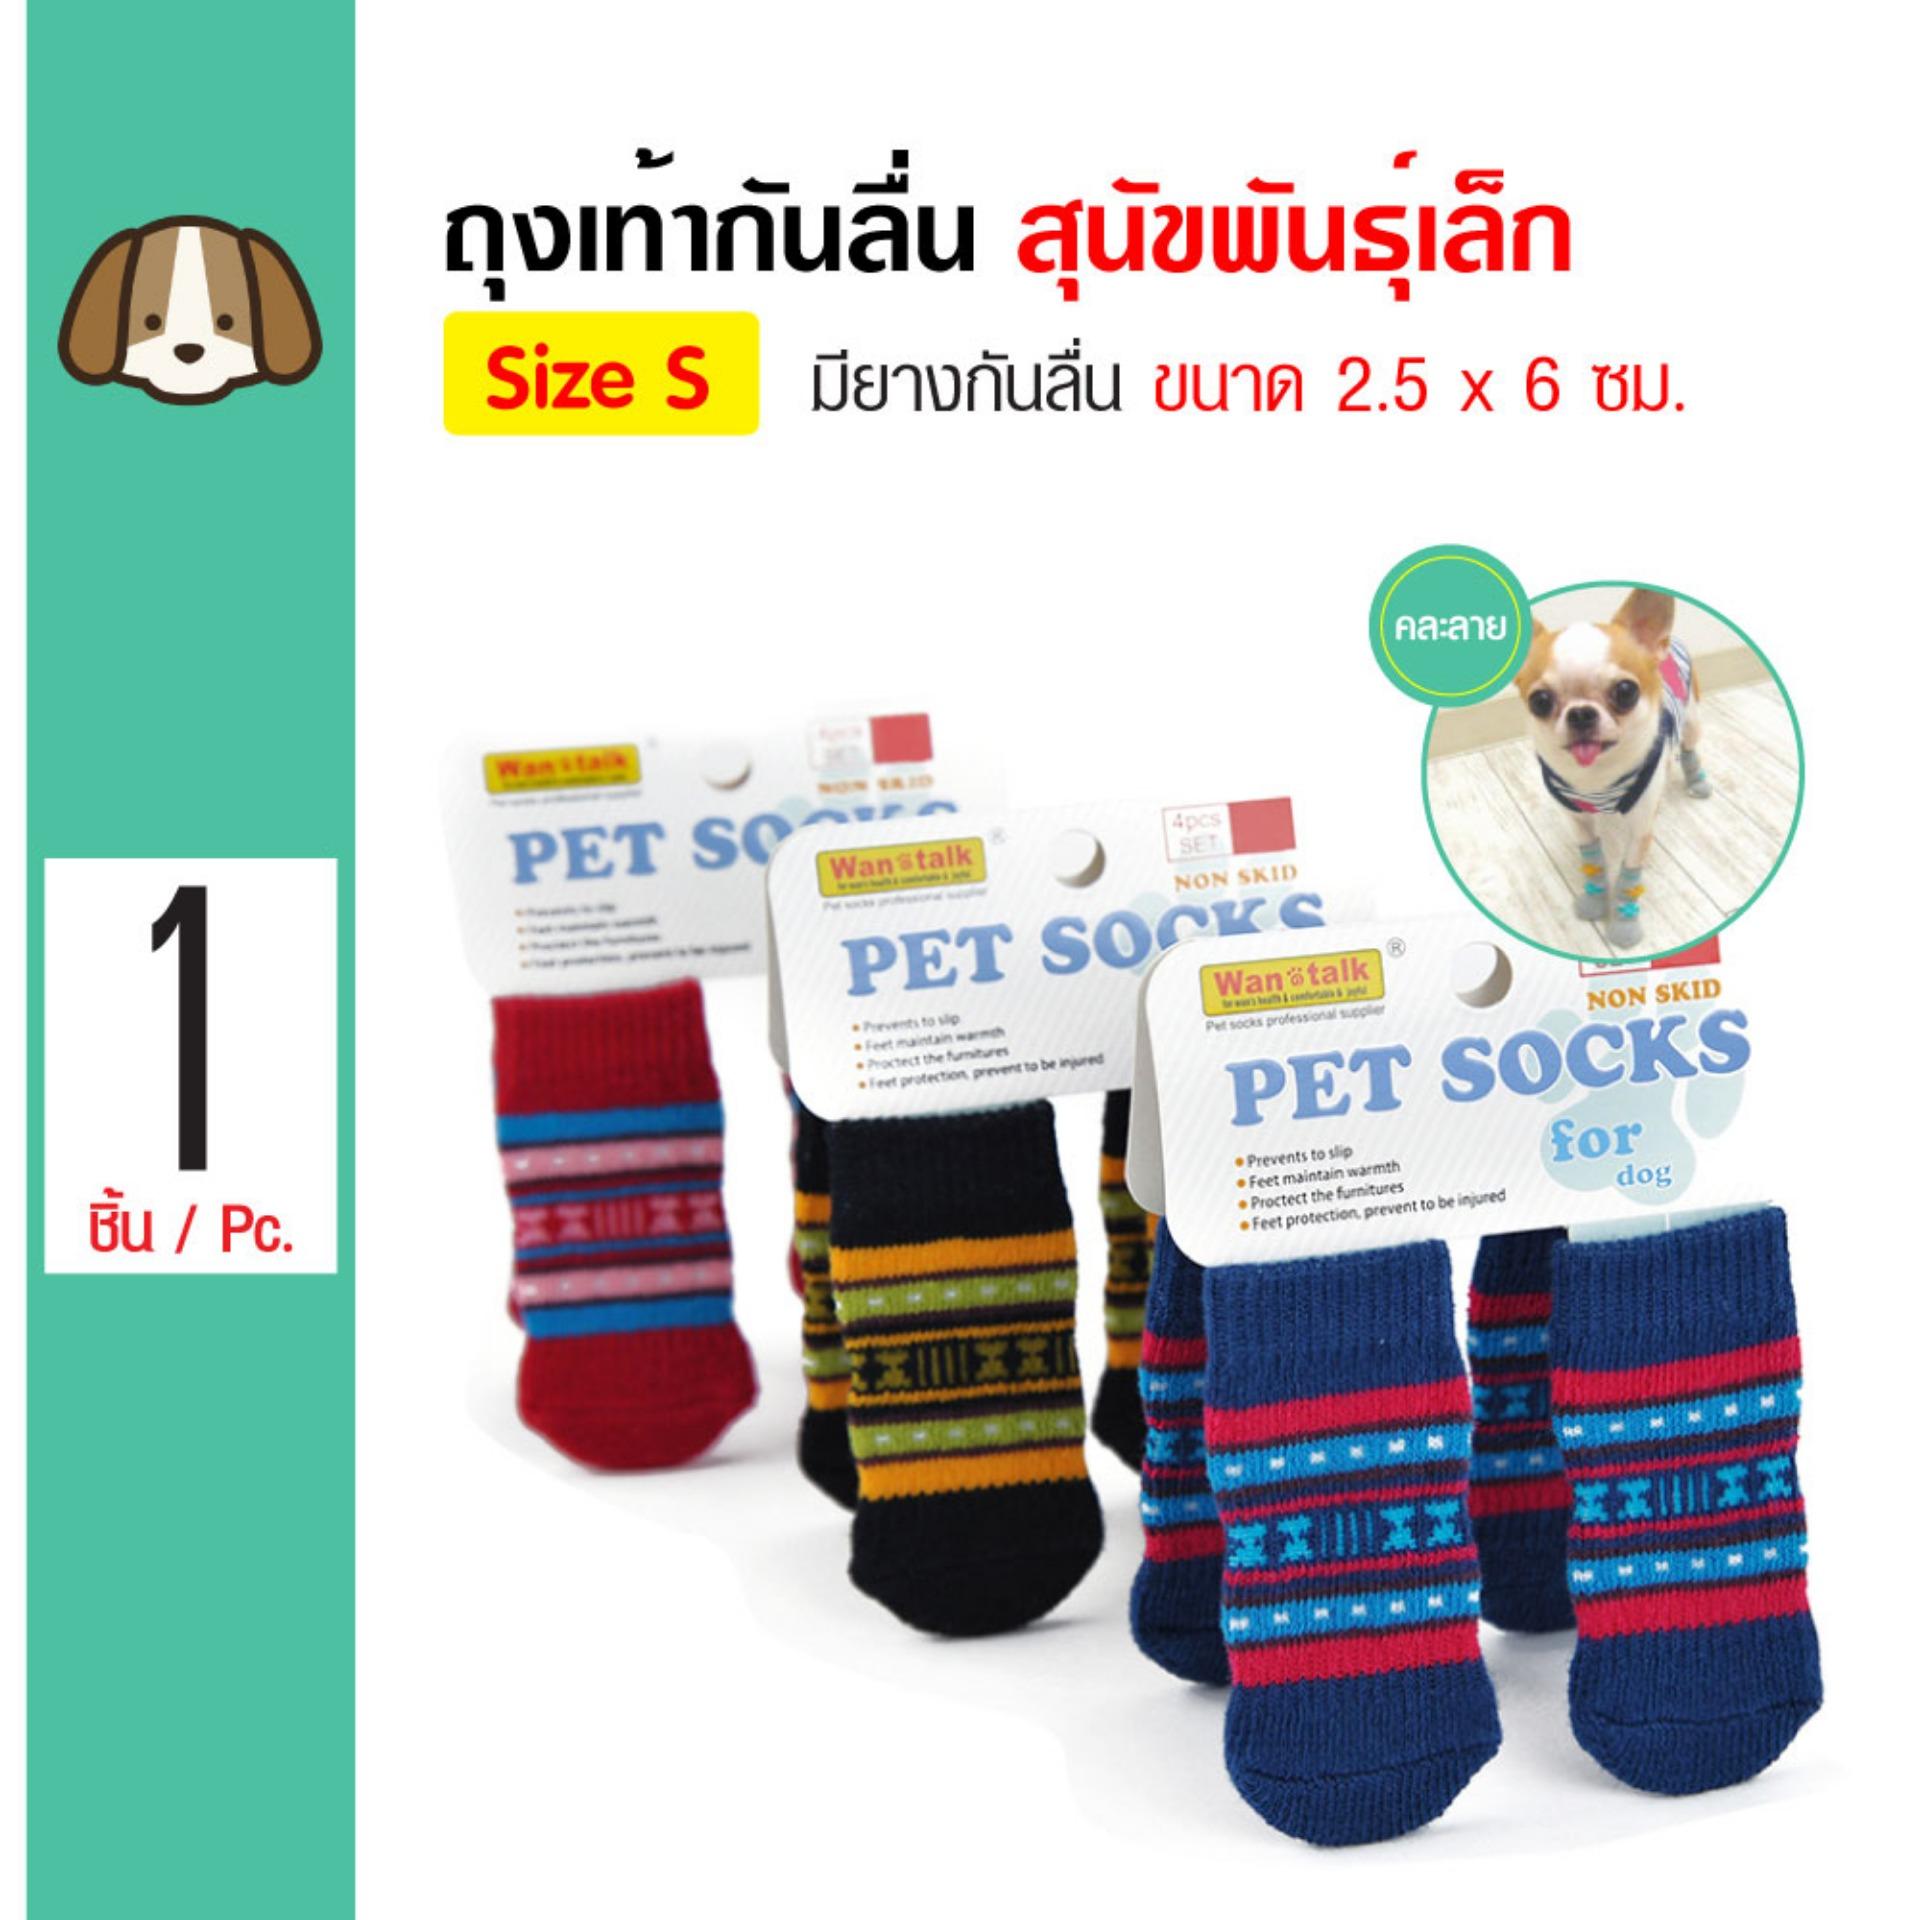 Dog Socks ถุงเท้าสุนัข พร้อมยางกันลื่น สำหรับสุนัขพันธุ์เล็ก Size S ขนาด 2.5x6 ซม. (4 ข้าง/ แพ็ค)